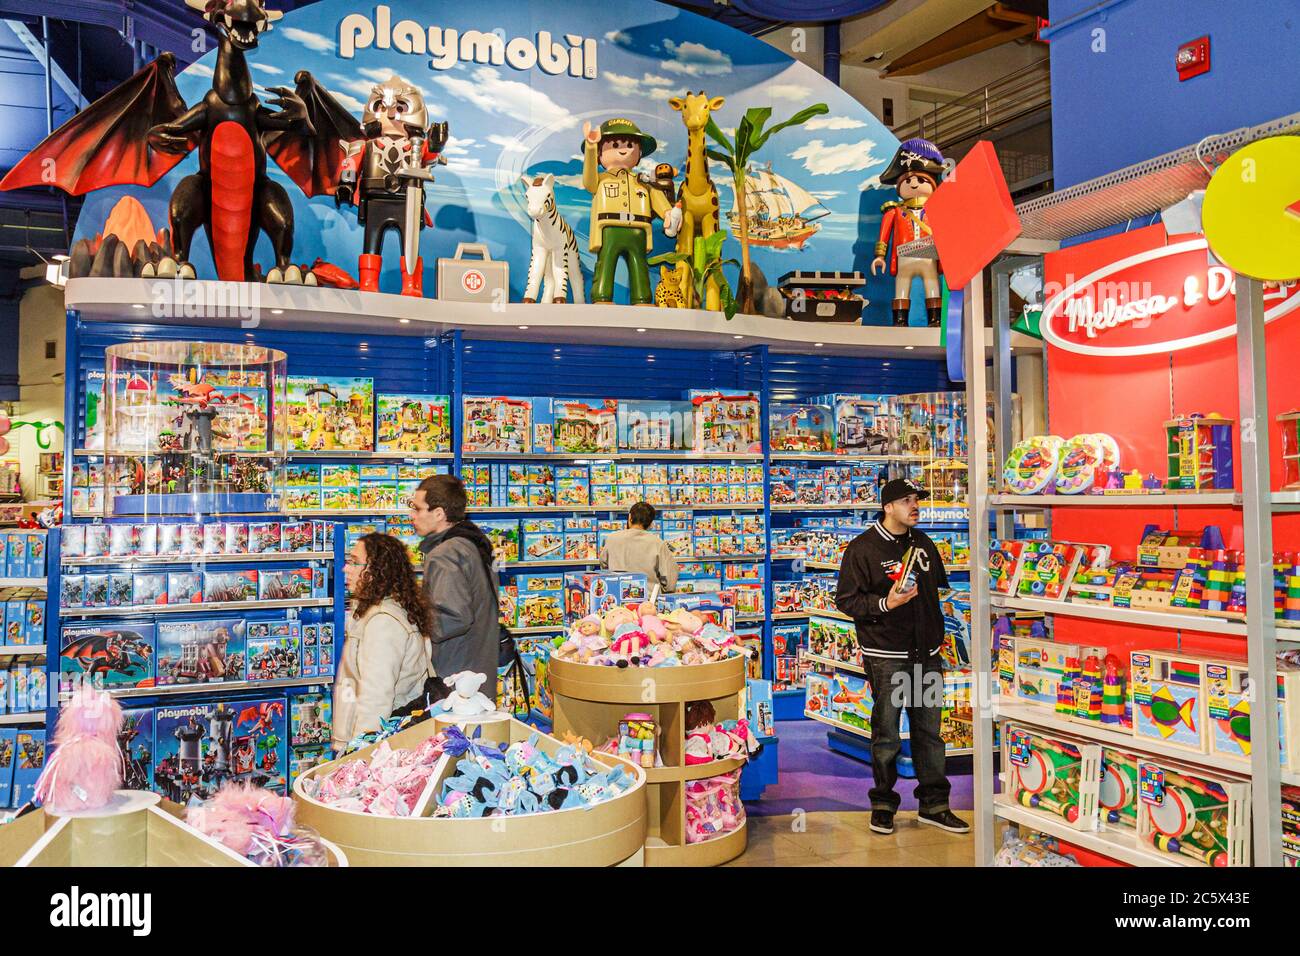 Playmobil -Fotos und -Bildmaterial in hoher Auflösung - Seite 2 - Alamy